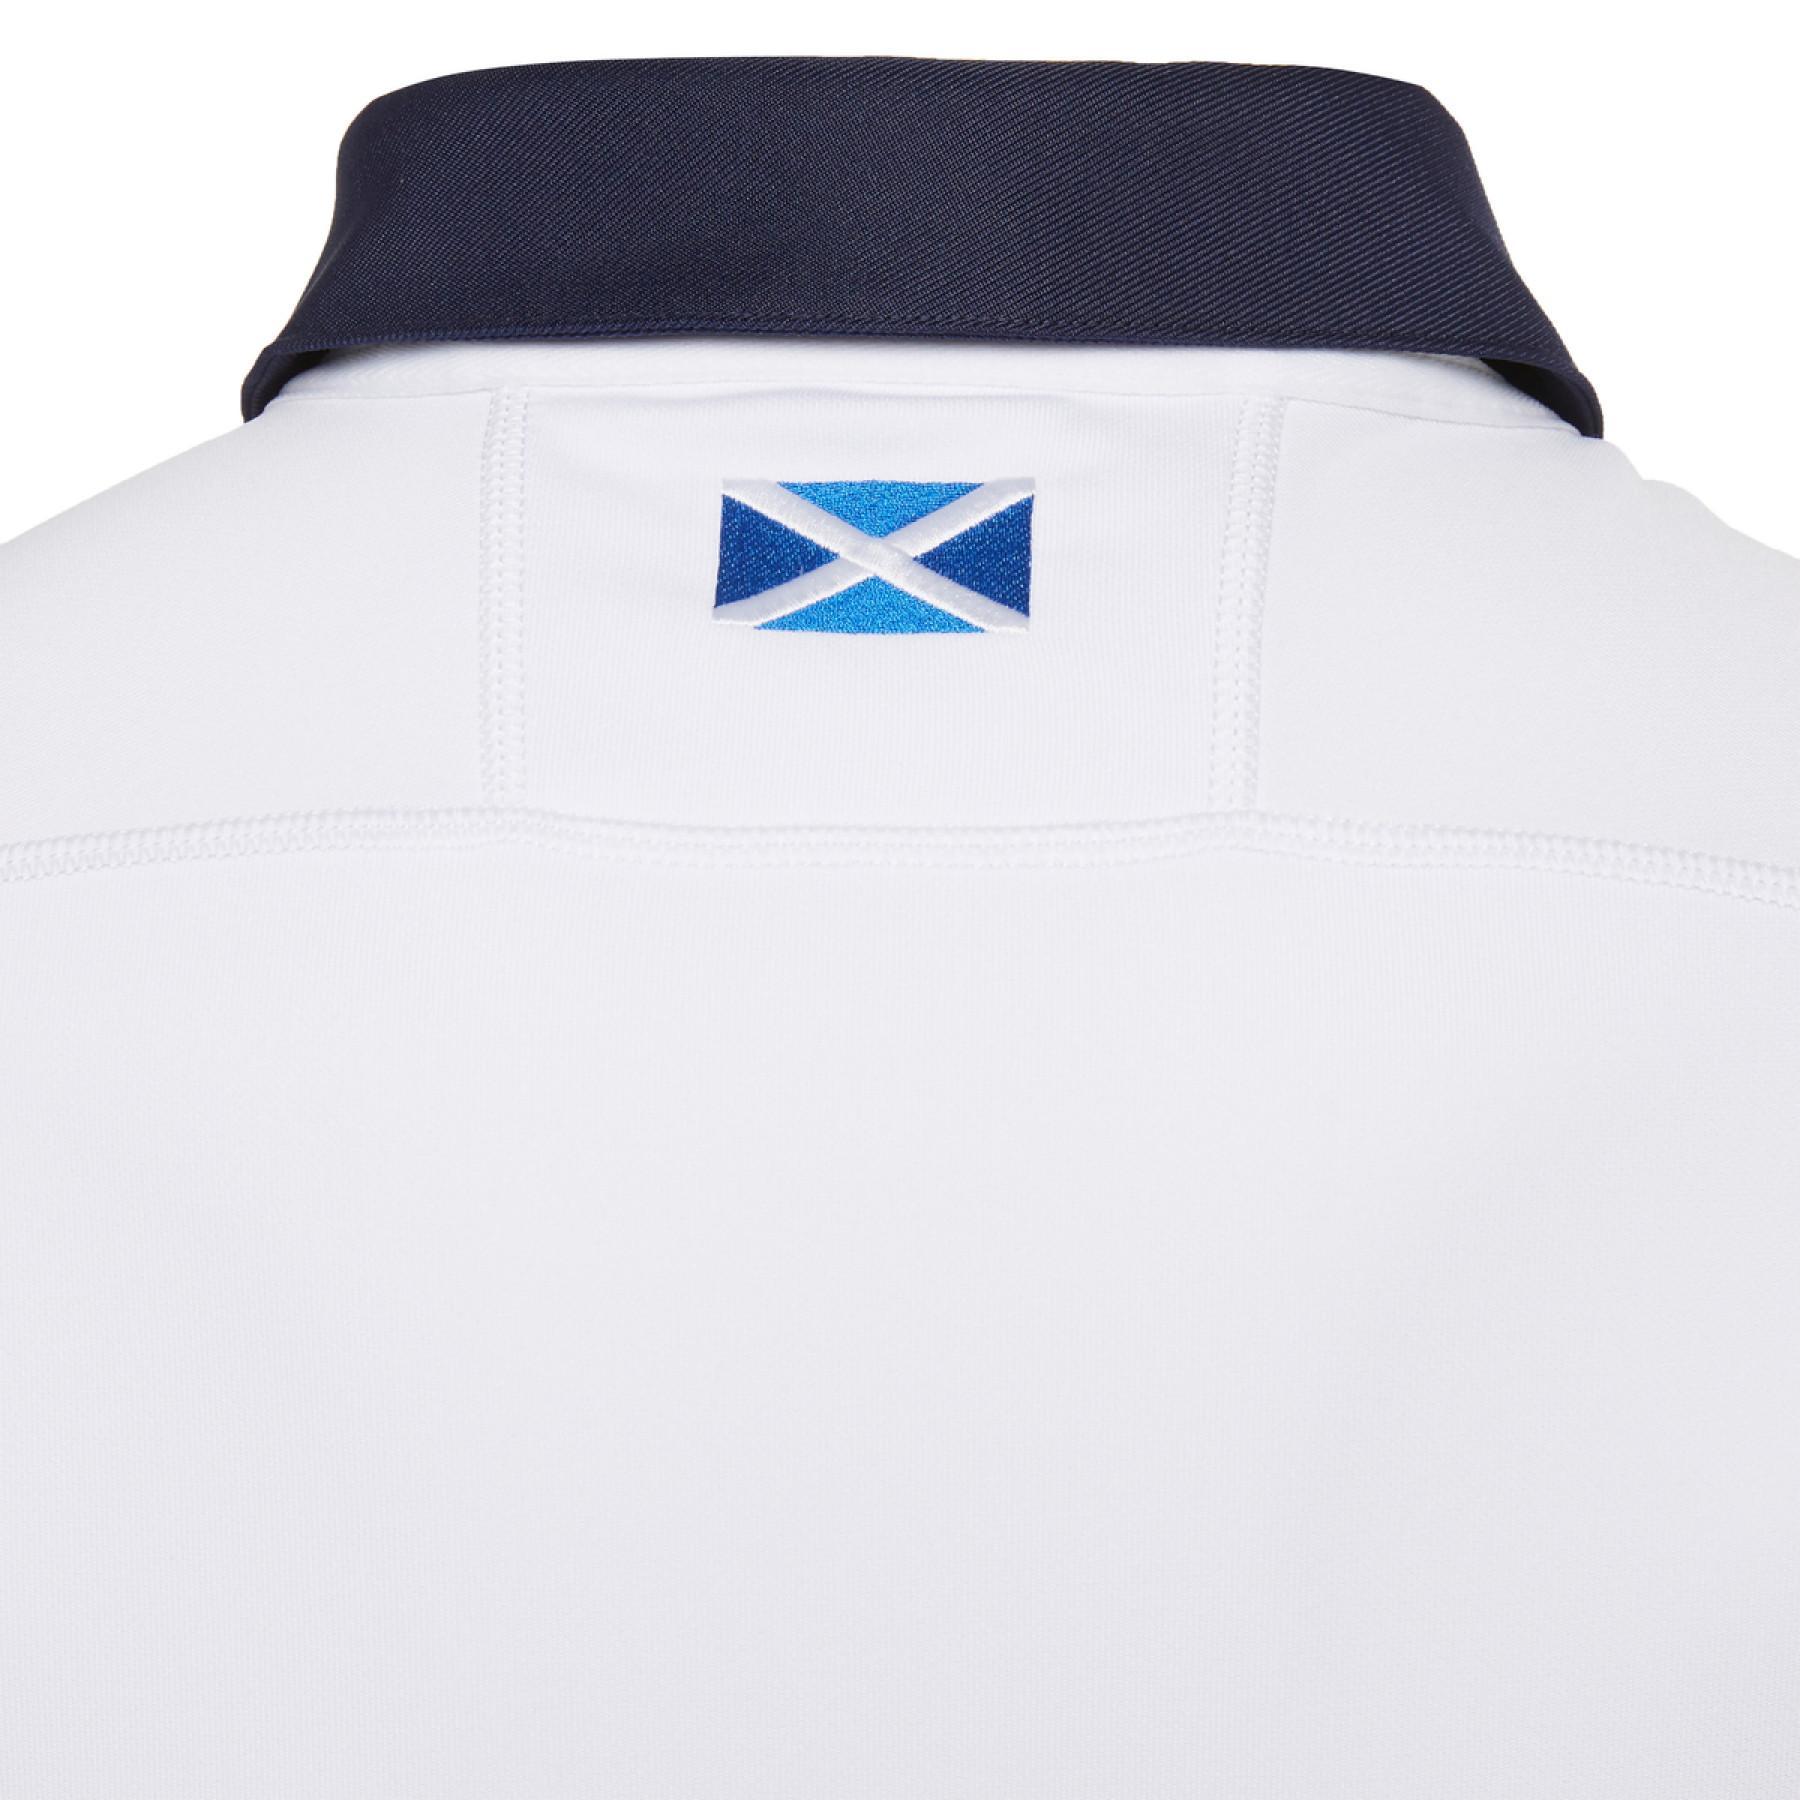 Koszulka zewnętrzna rugby Szkocji 2020/21